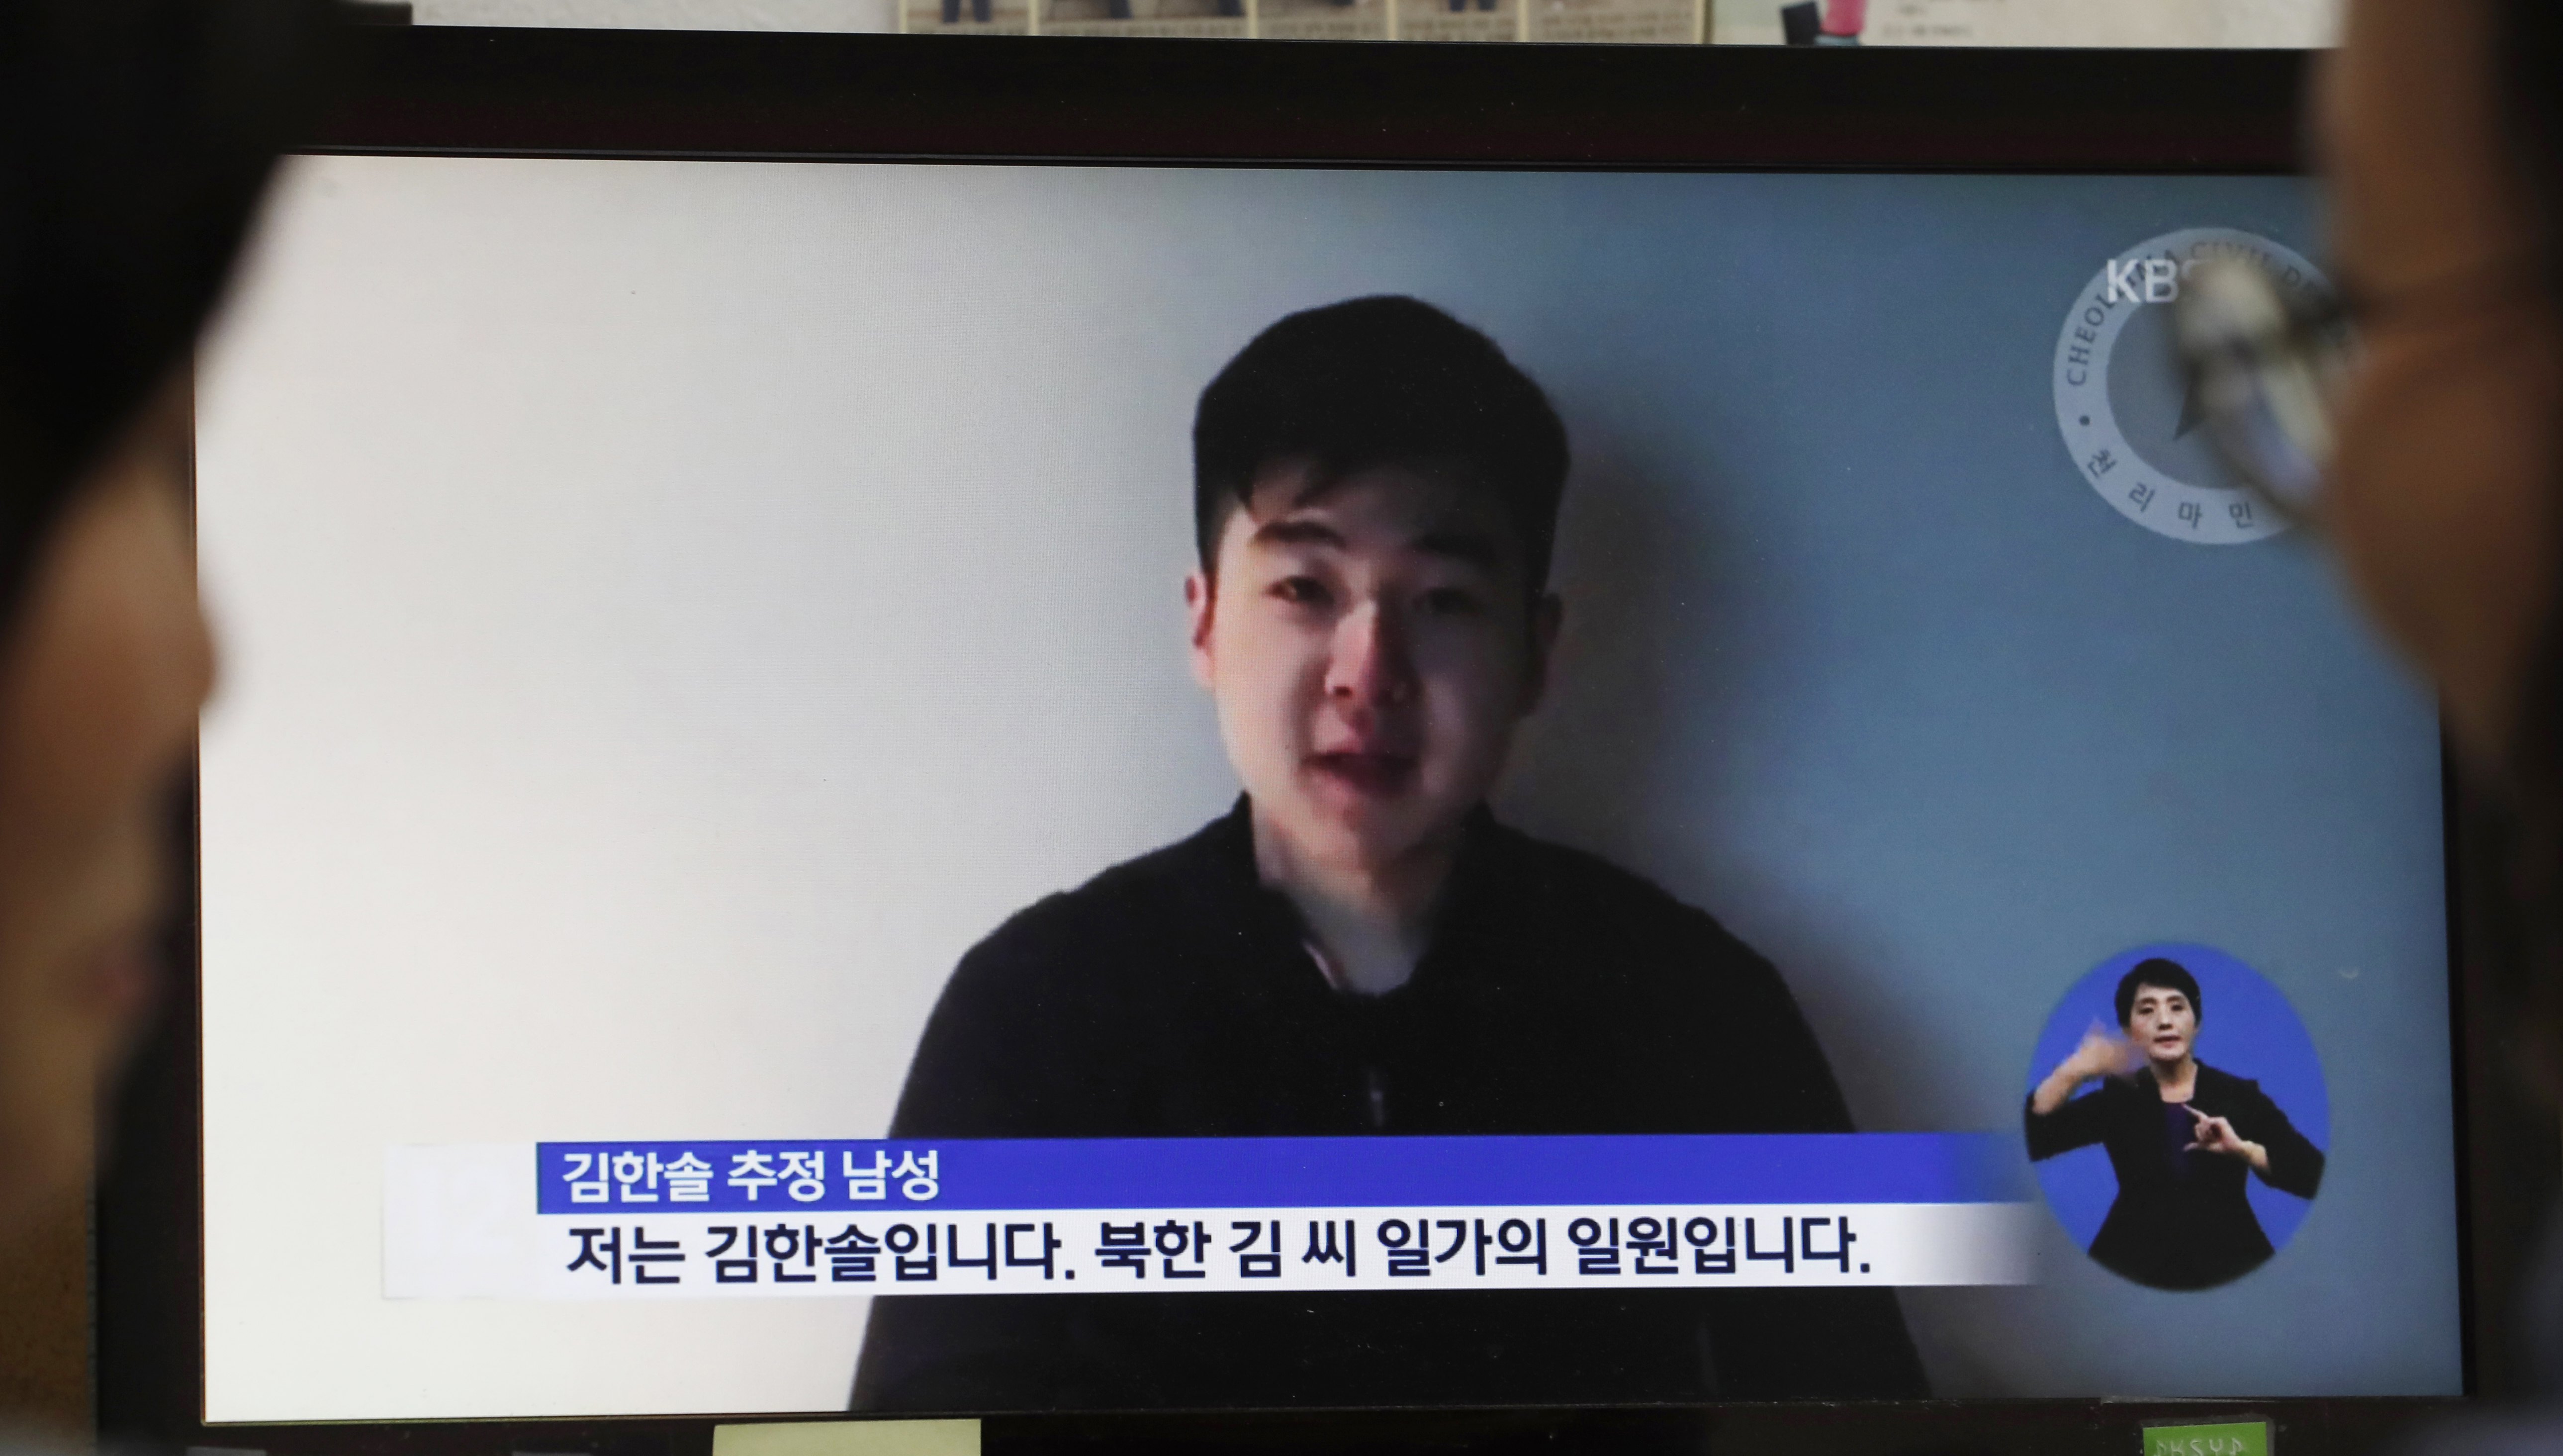 Bίντεο-μυστήριο με τον γιο του Κιμ Γιονγκ Ναμ στο Διαδίκτυο